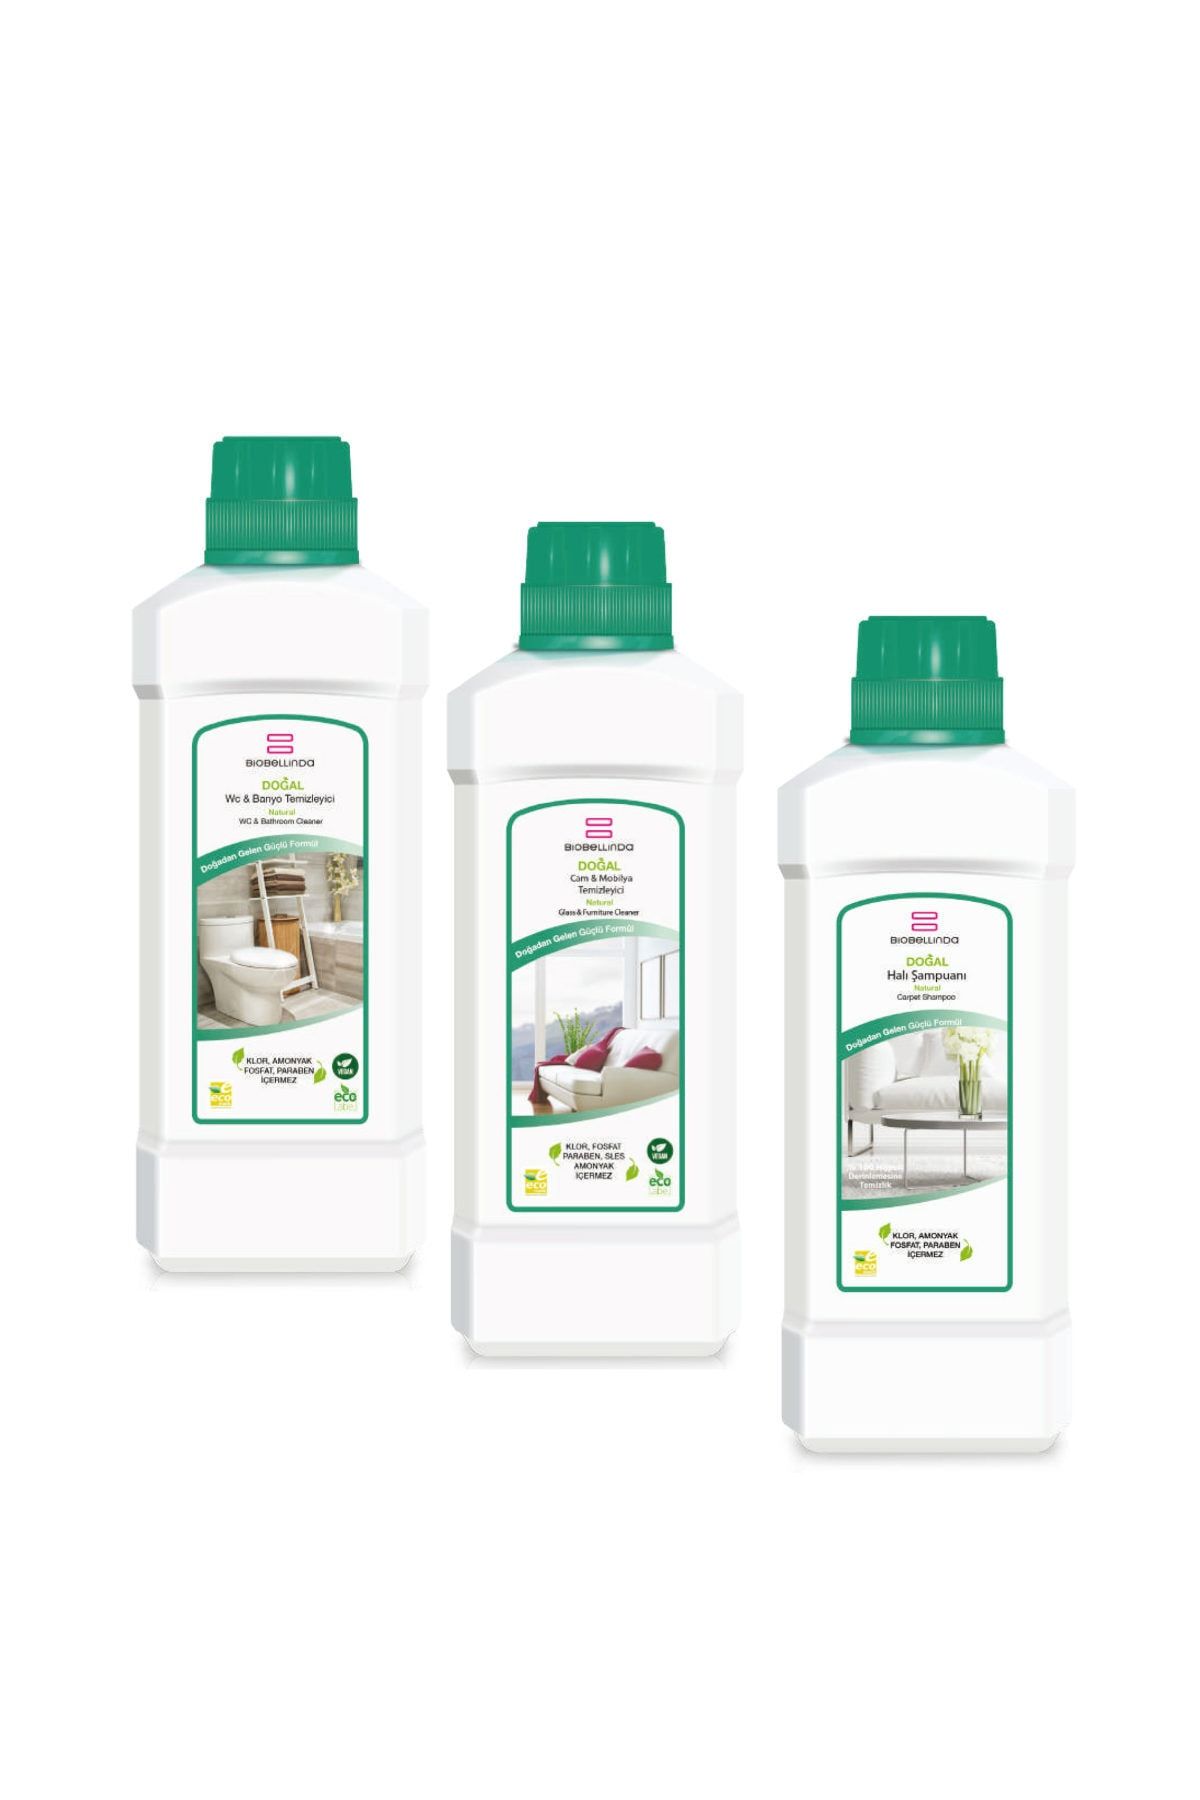 BioBellinda Wc & Banyo Temizleyici + Cam & Mobilya Temizleyici + Halı Şampuanı